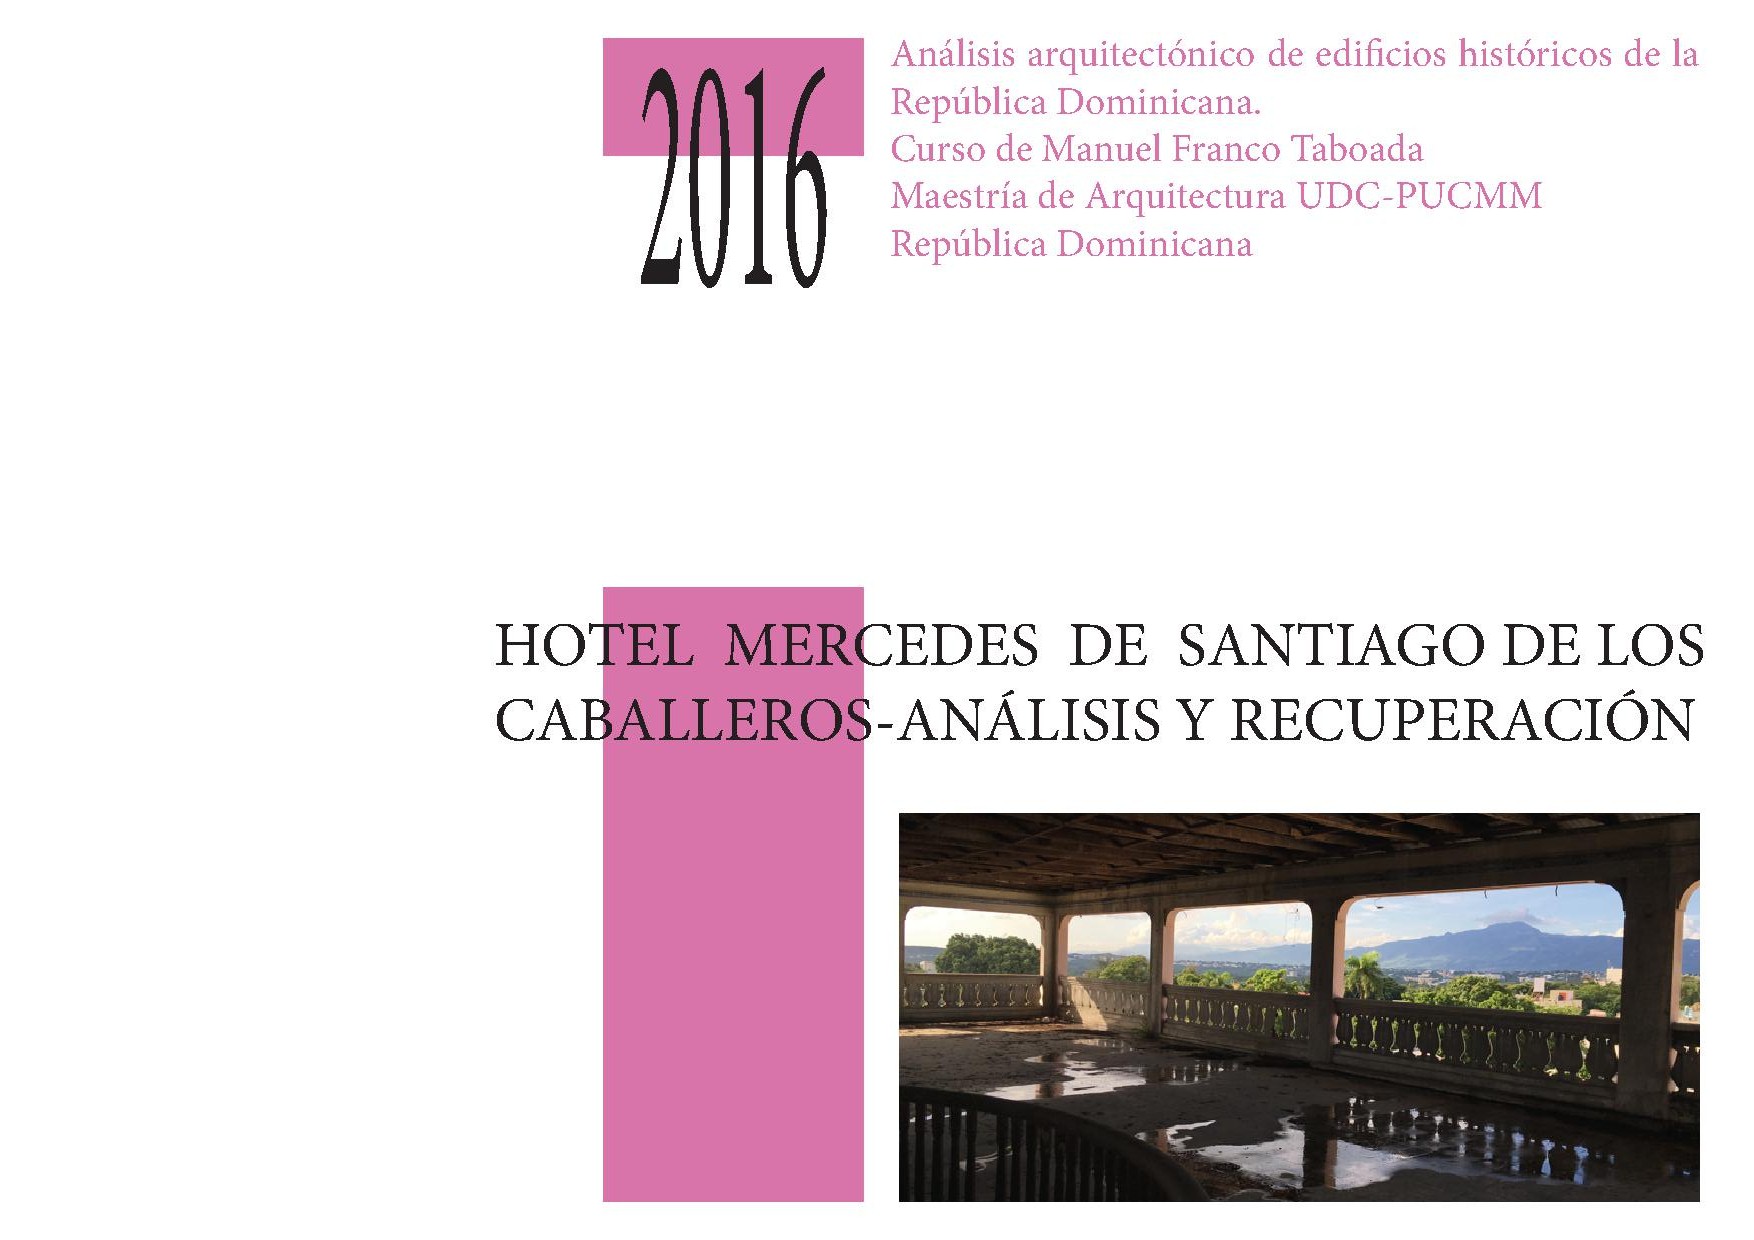 Imagen de portada del libro Hotel Mercedes de Santiago de los Caballeros